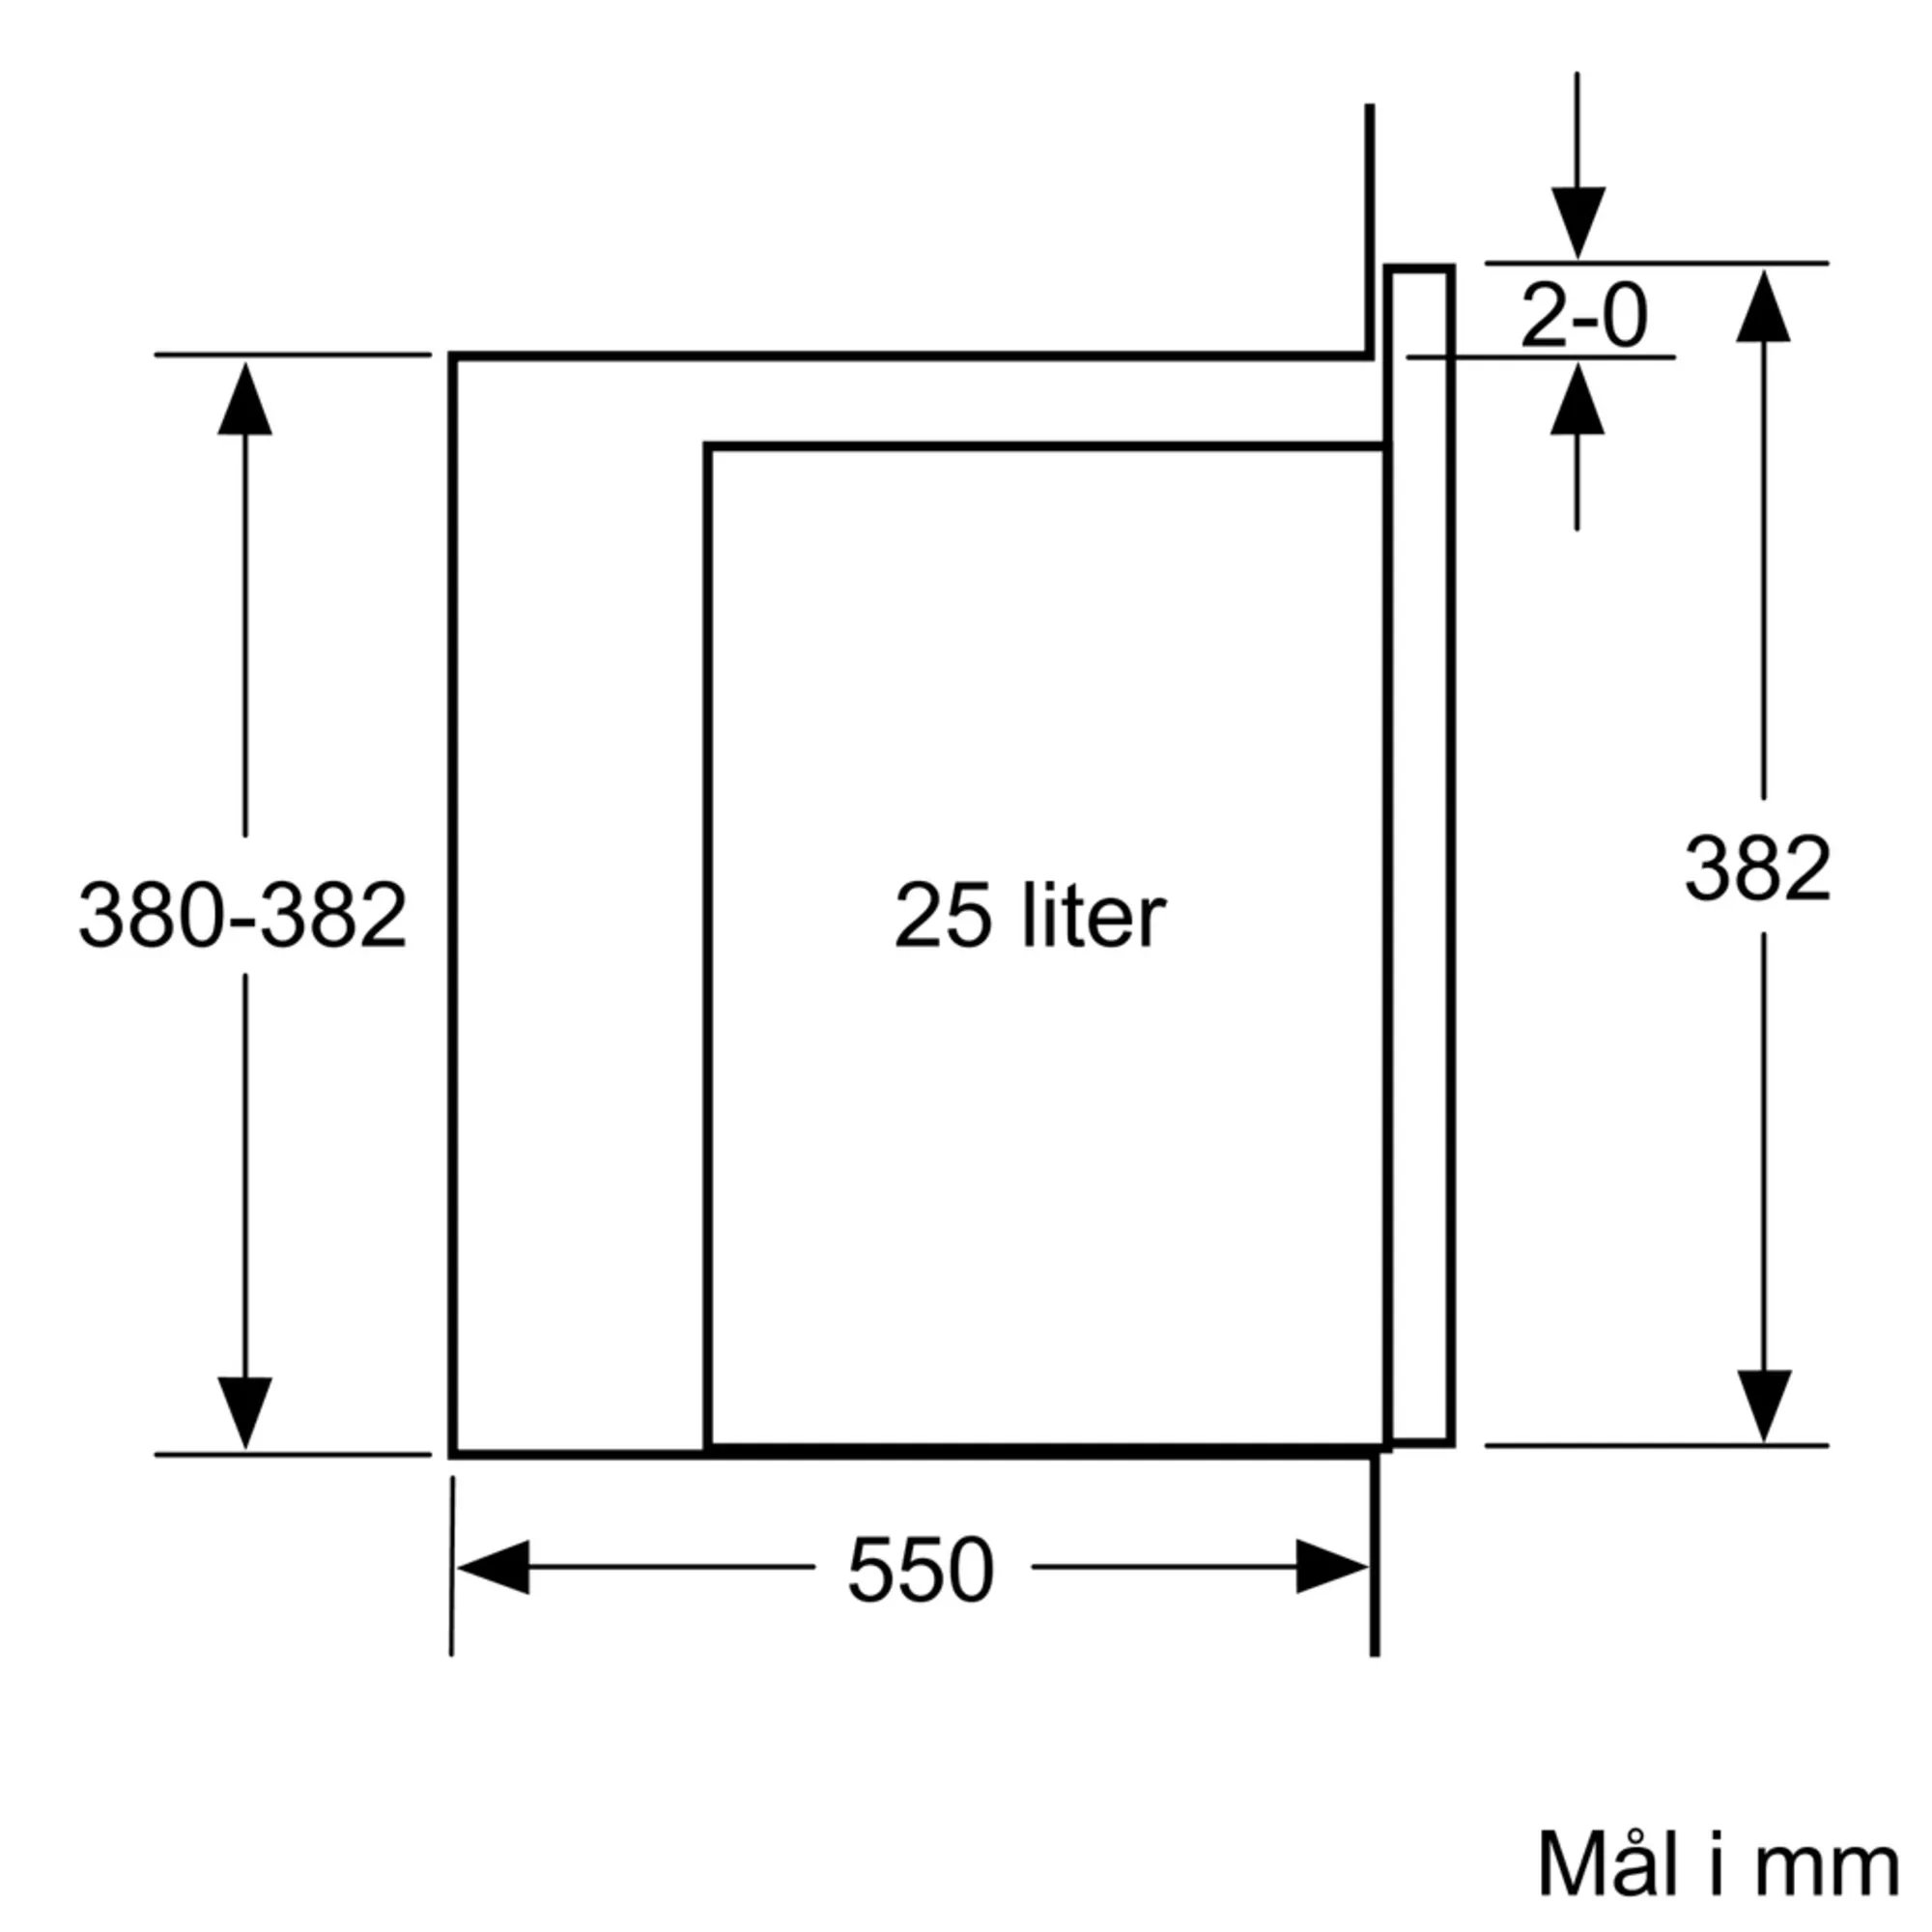 Bilde nr. 5 av produktet BEL454MB0